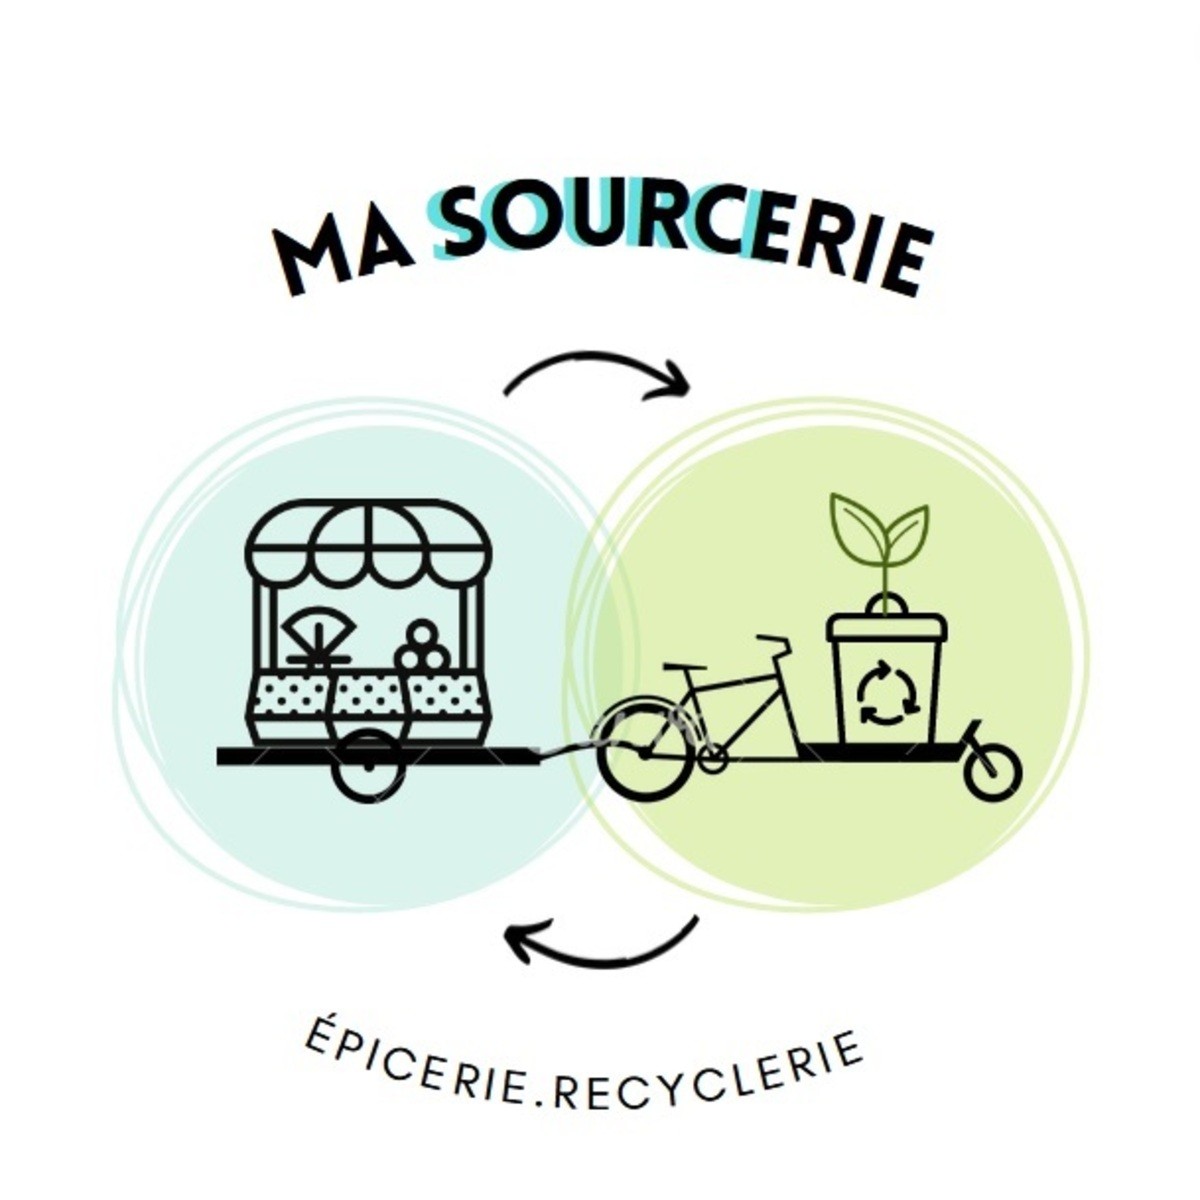 Ma Sourcerie - épicerie.recyclerie itinérante à vélo - en cours de création